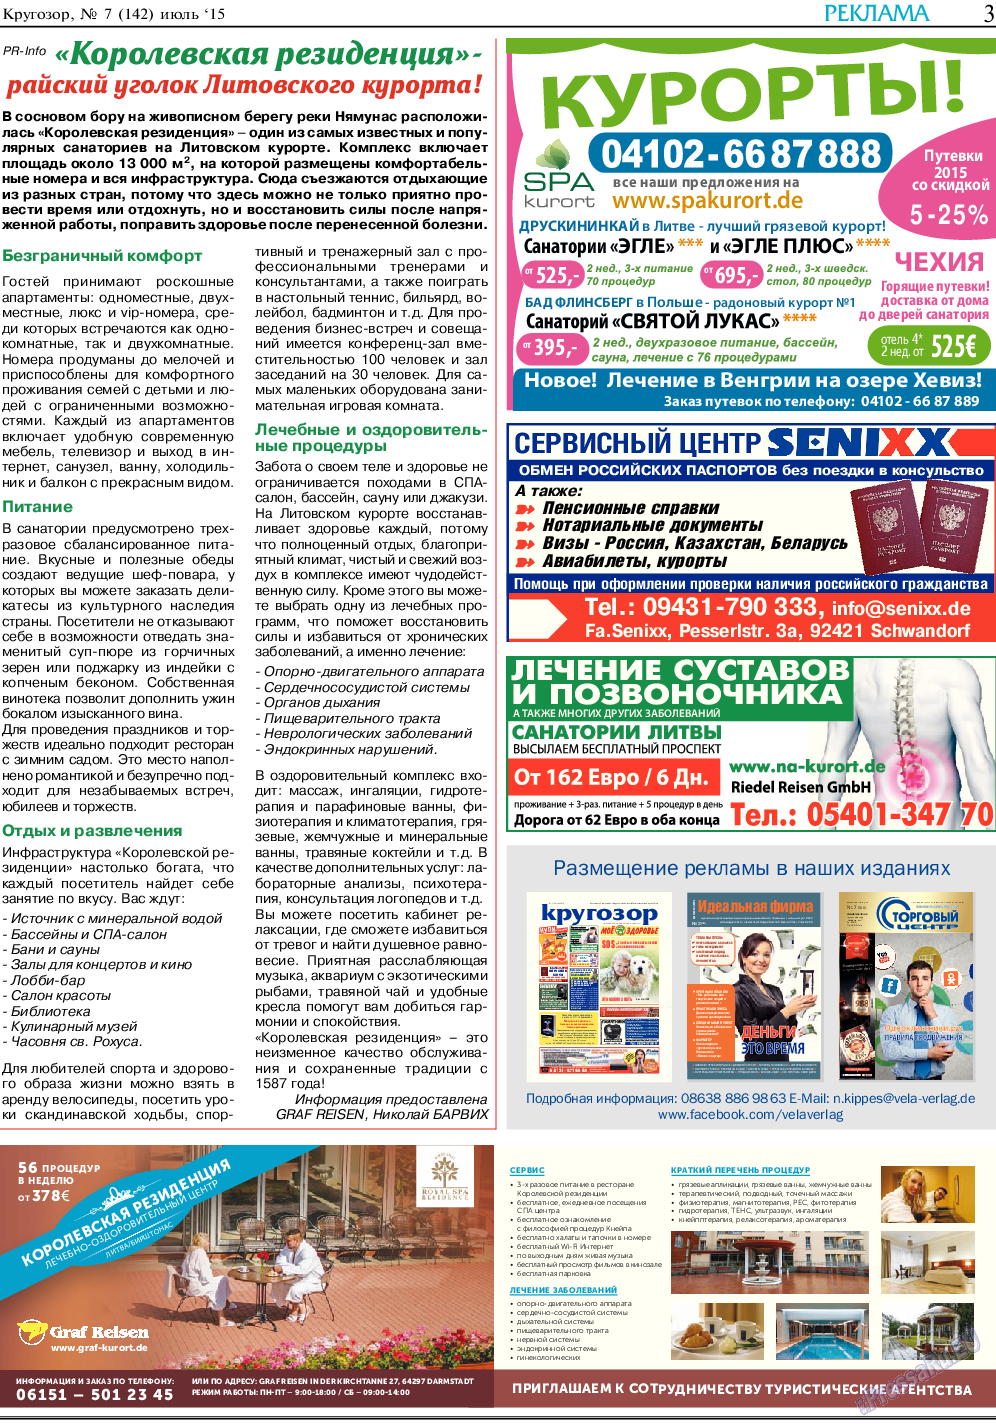 Кругозор, газета. 2015 №7 стр.3